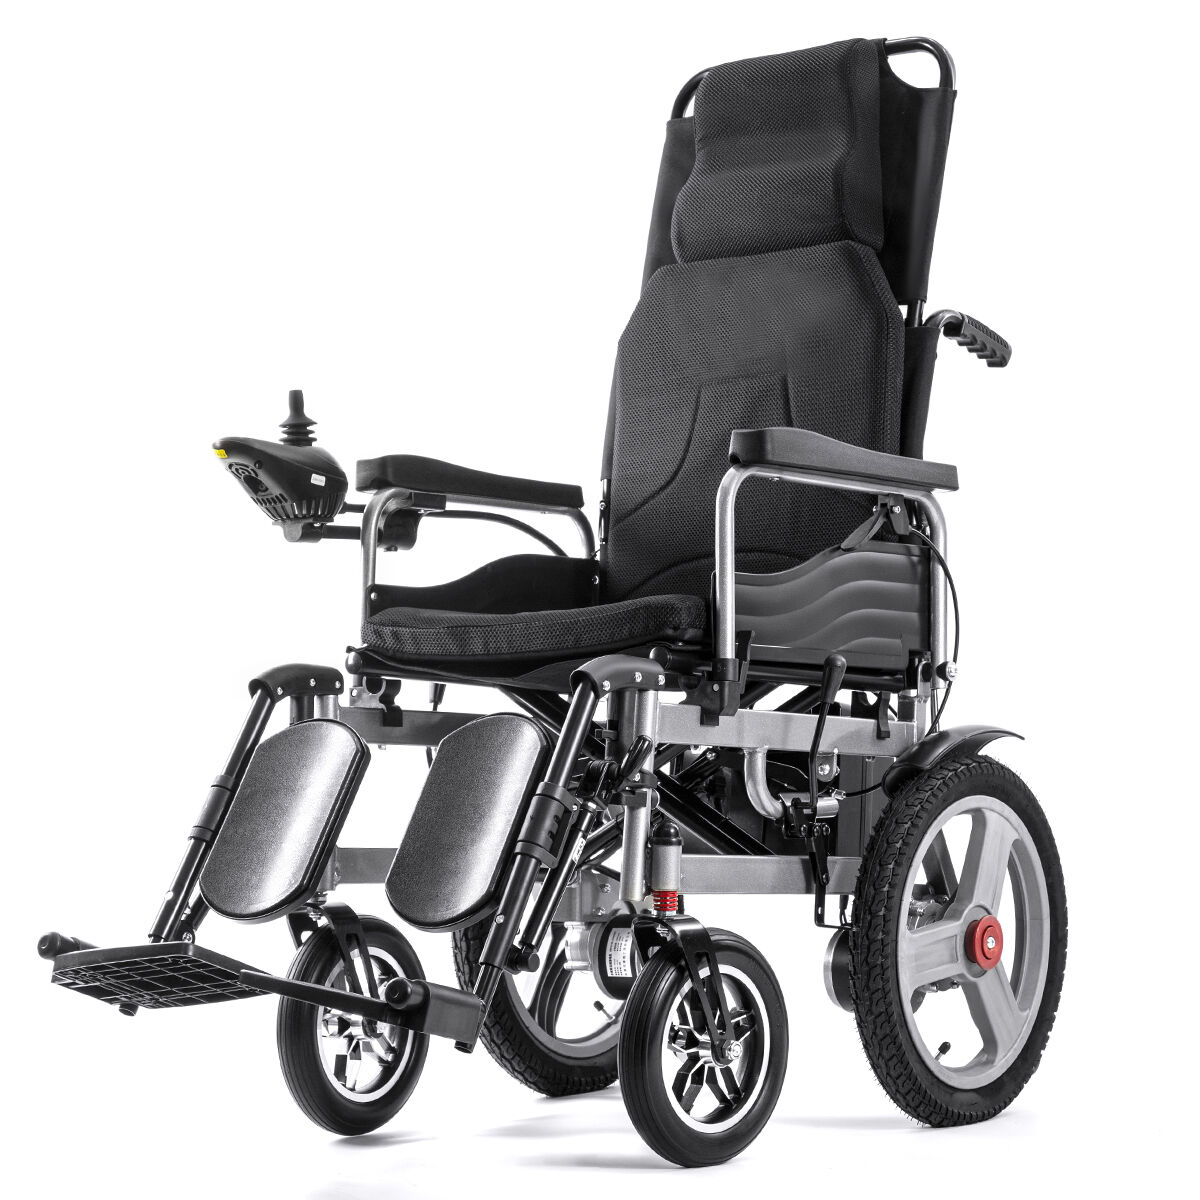 BC-ES6003A-LW כיסא גלגלים חשמלי שוכב לכל שטח מתקפל